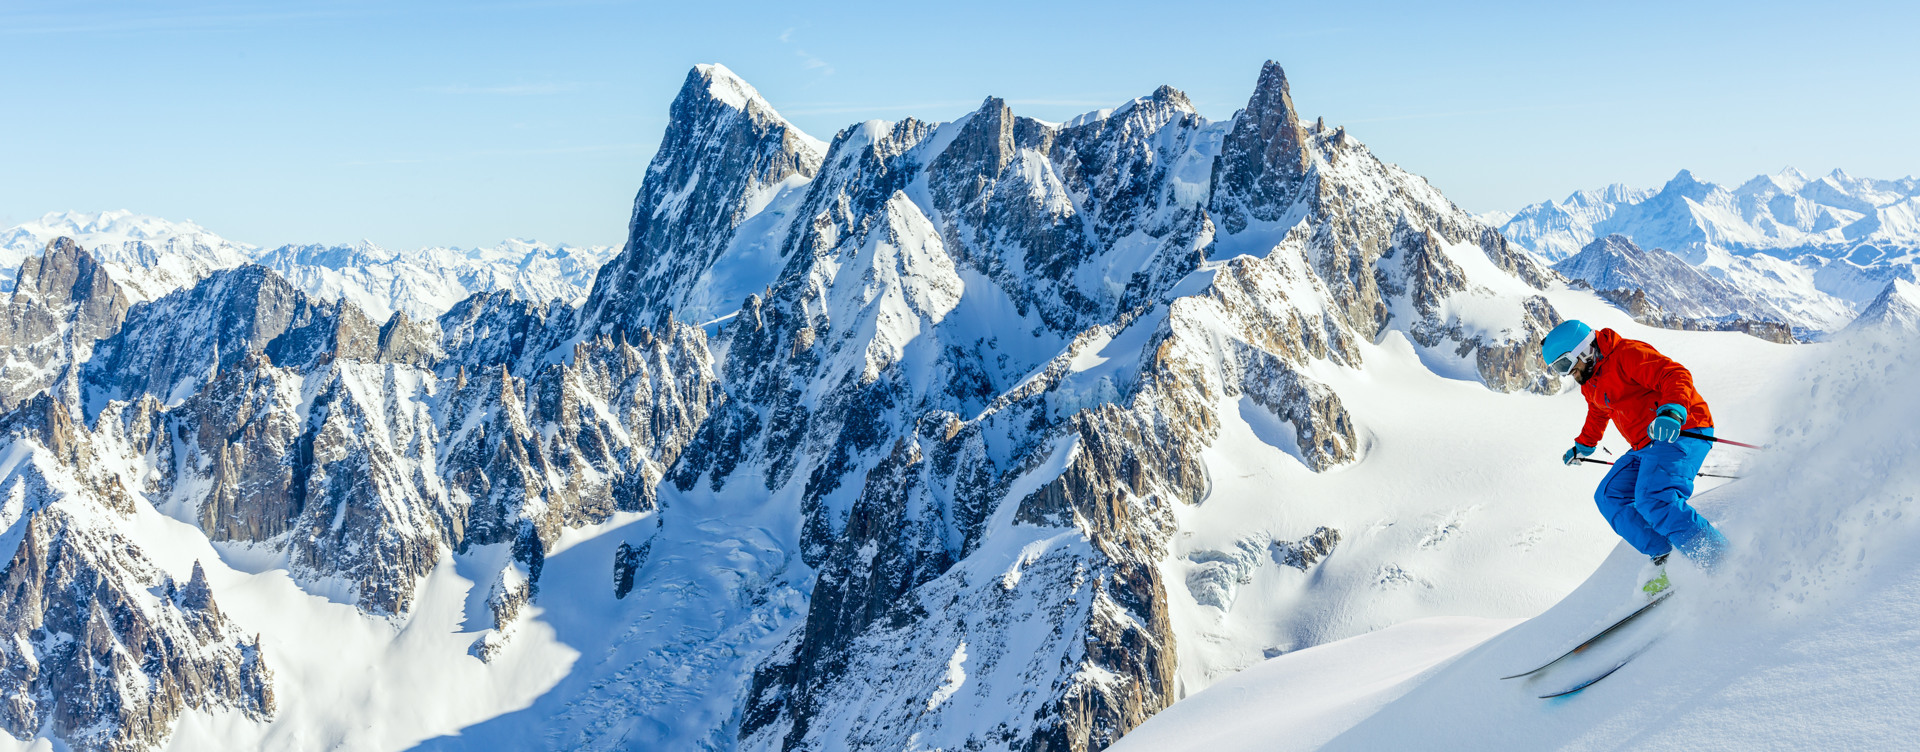 Beleef een onvergetelijke winter in het prachtige Alpengebied